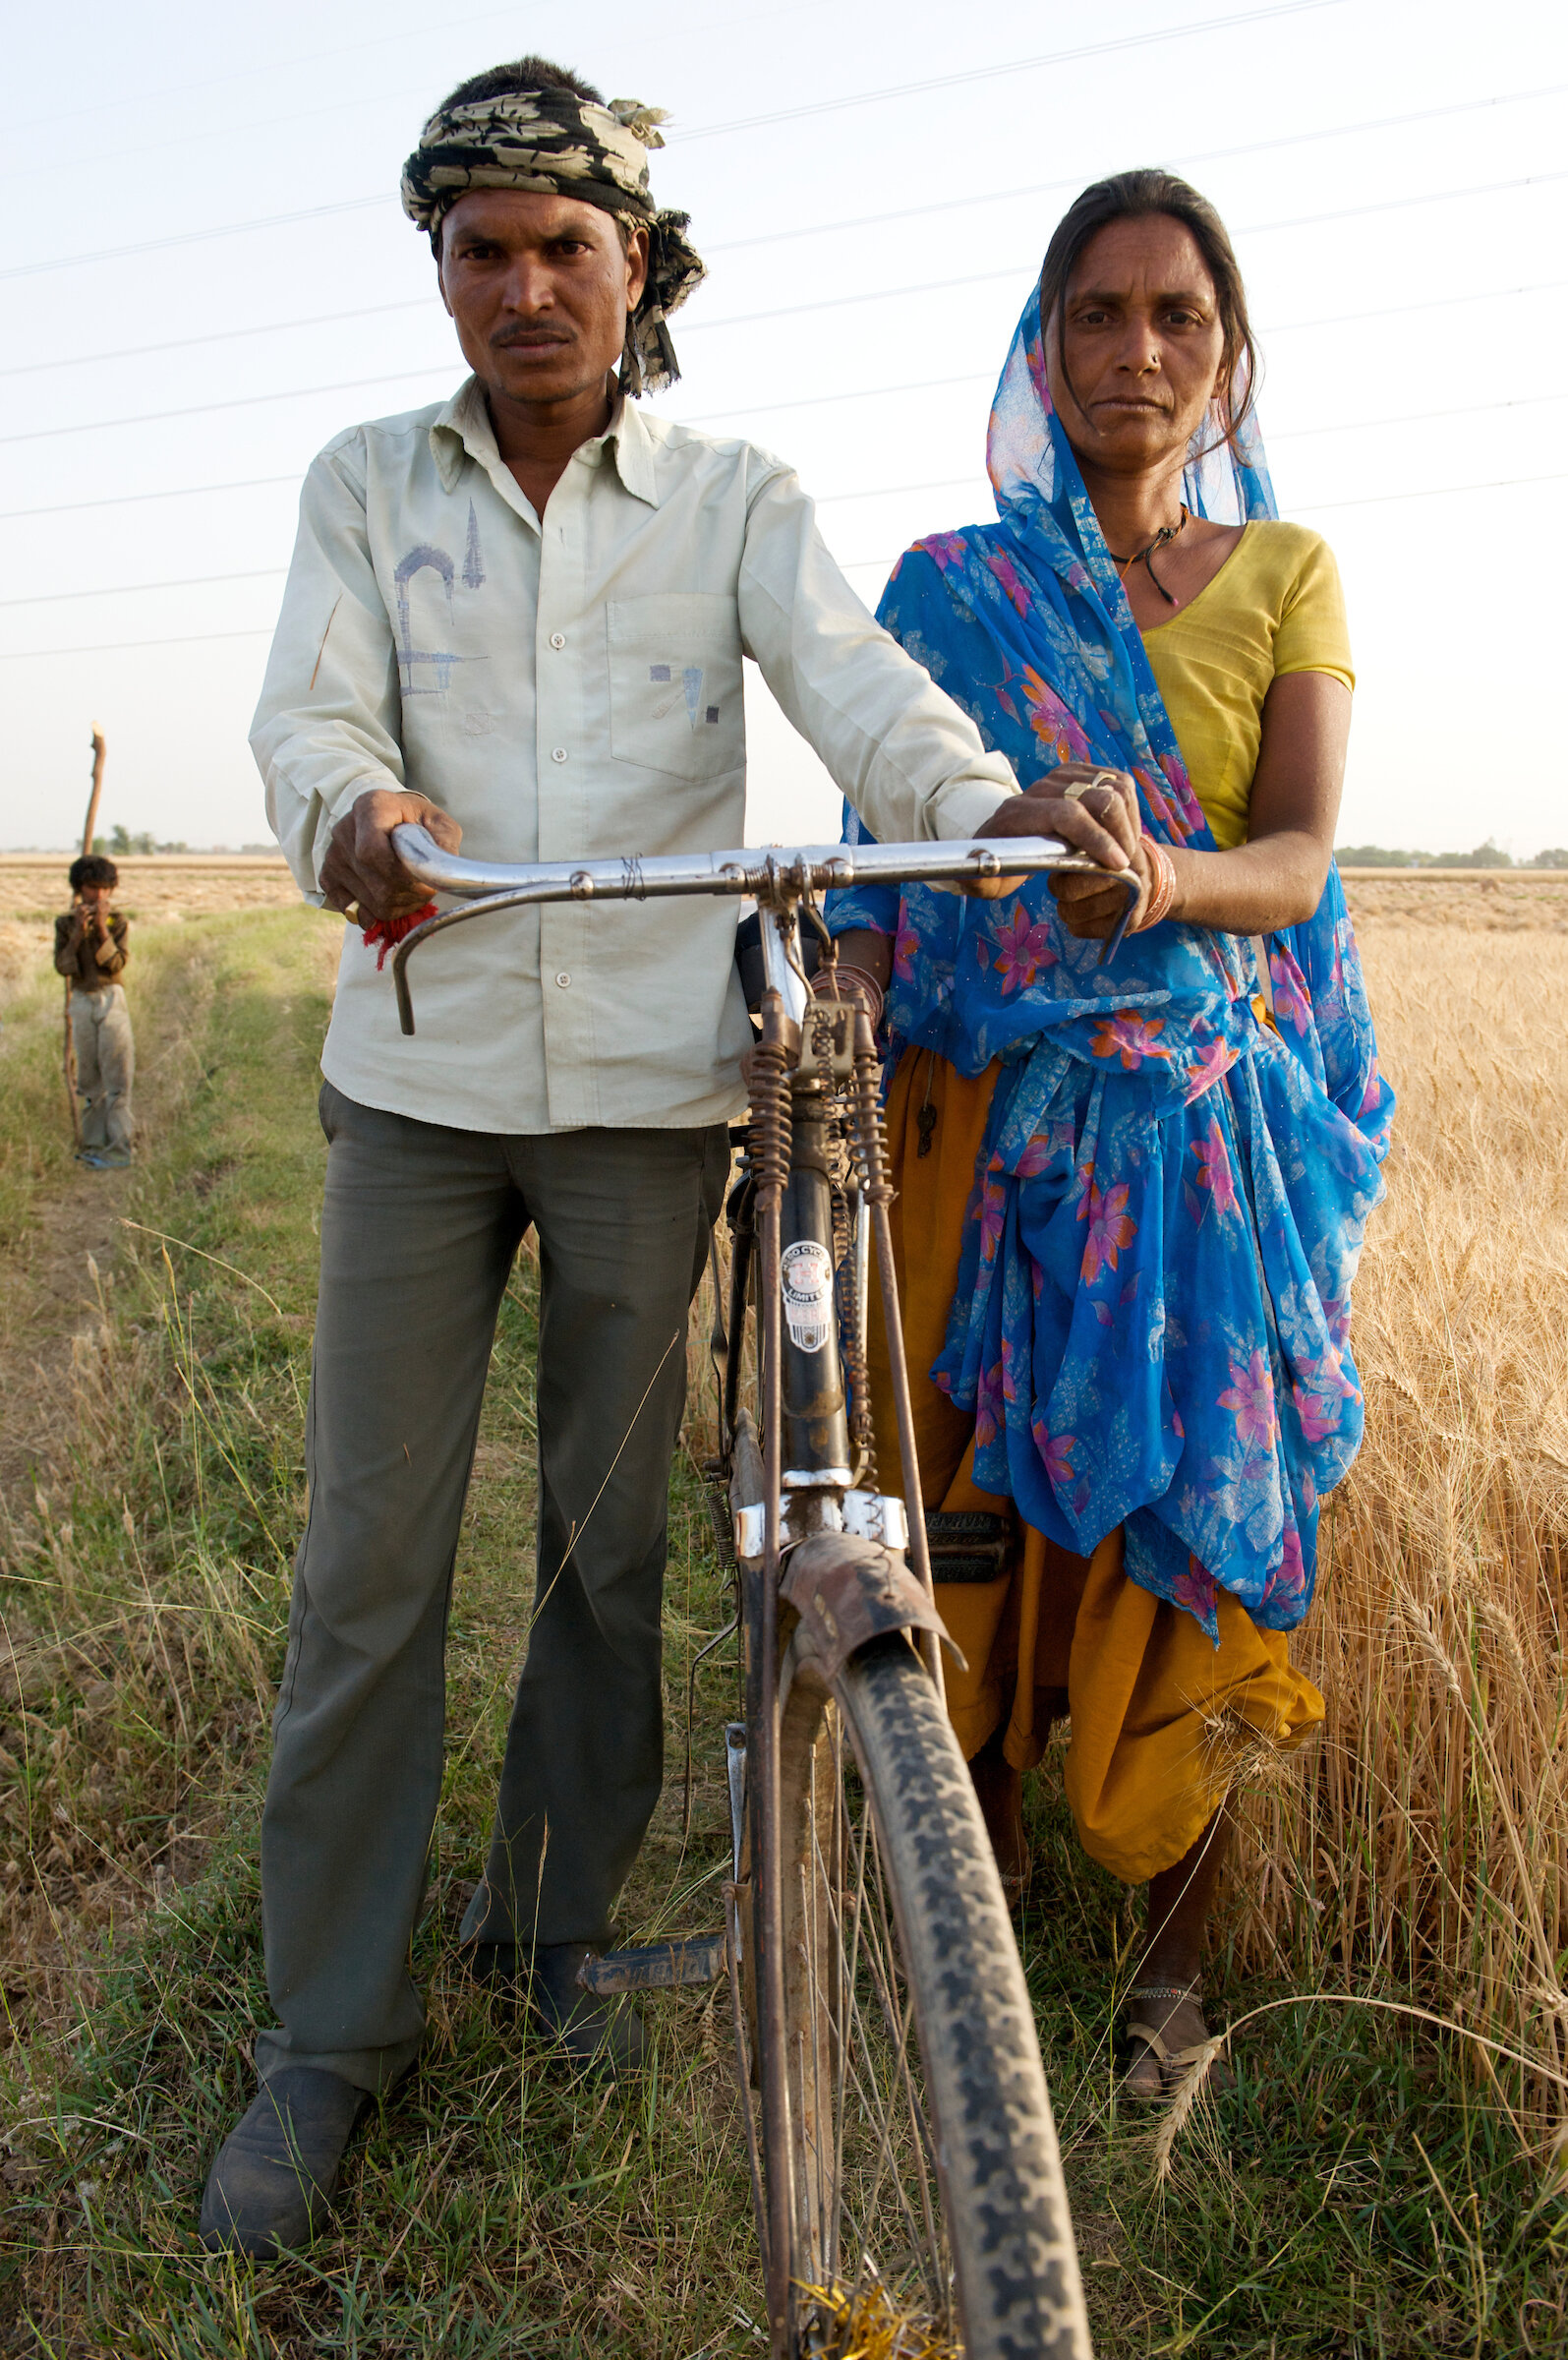  Farmers - Barundhan, India 